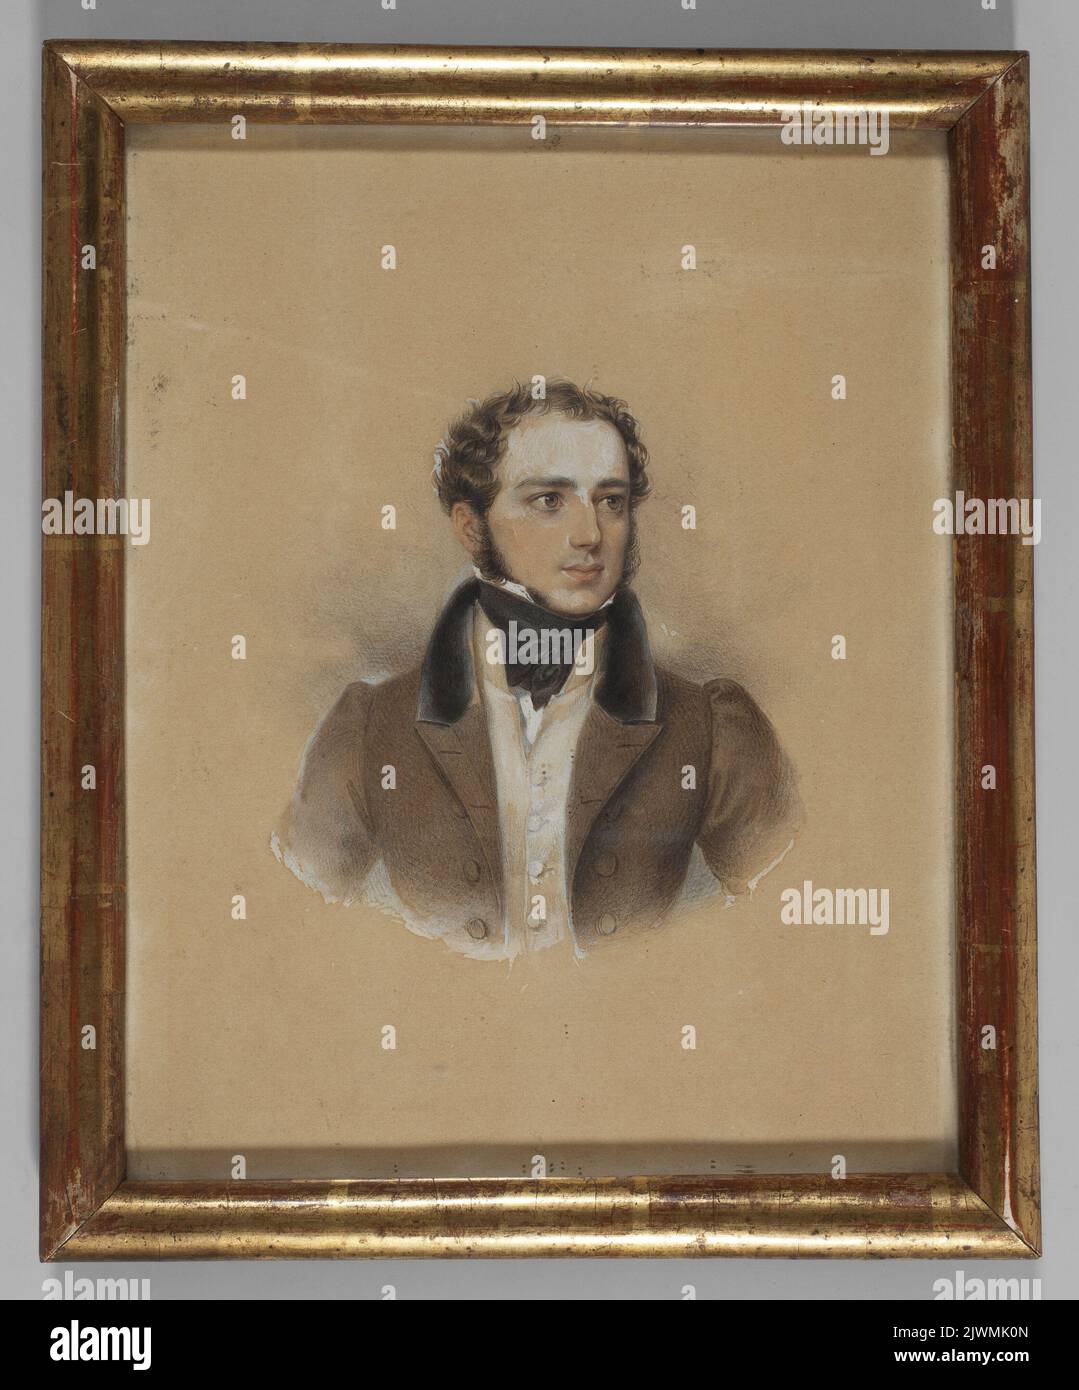 Władysław Sanguszko W wieku młodzieńczym. Ender, Johann Nepomuk (1793-1854), peintre Banque D'Images